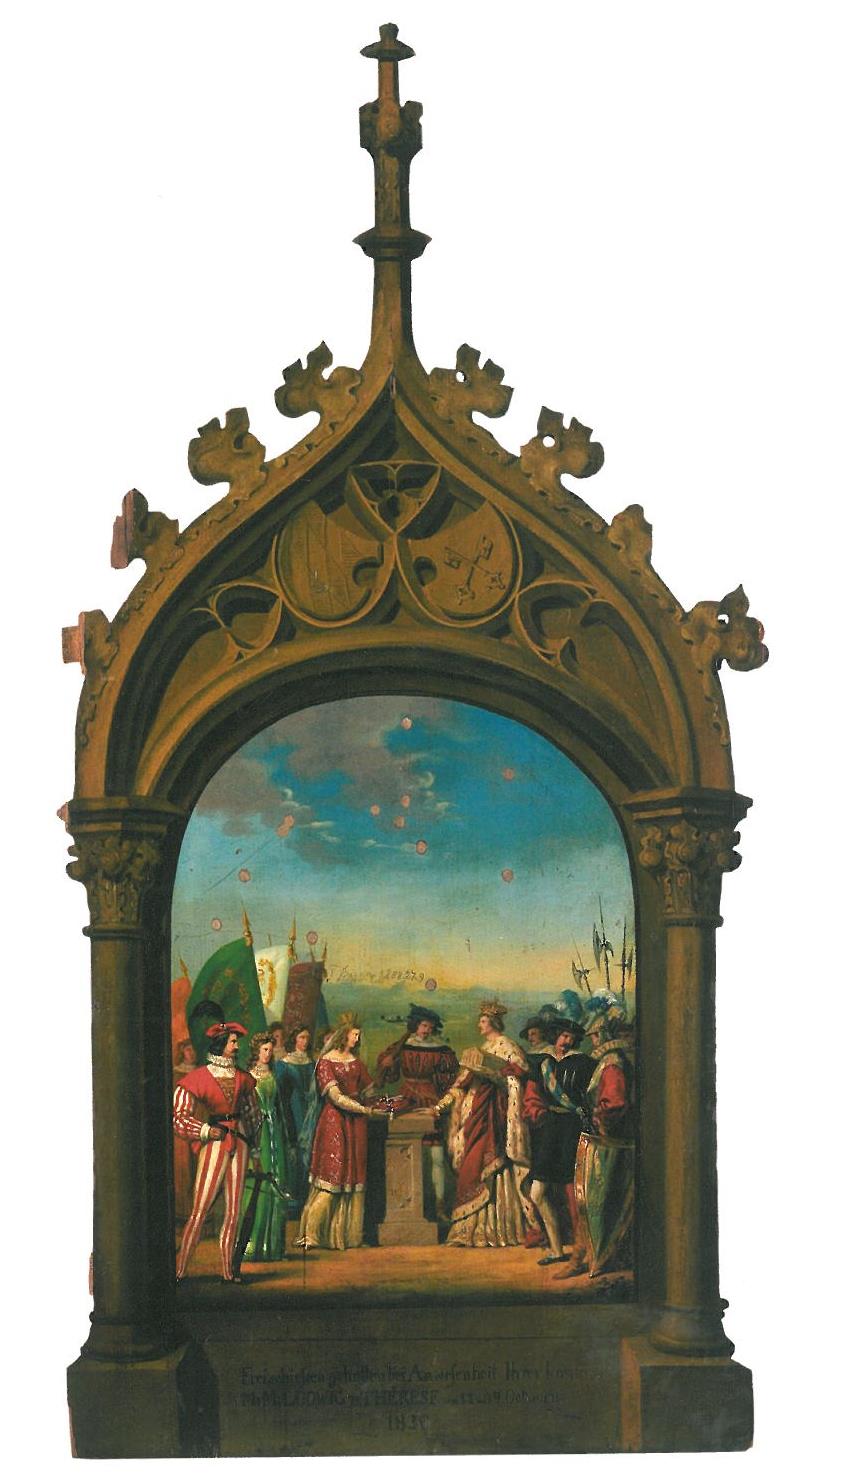 Ratisbona überreicht König Ludwig I. die Stadtschlüssel. Hans Kranzberger, Regensburg, 1830, Schützenscheibe.